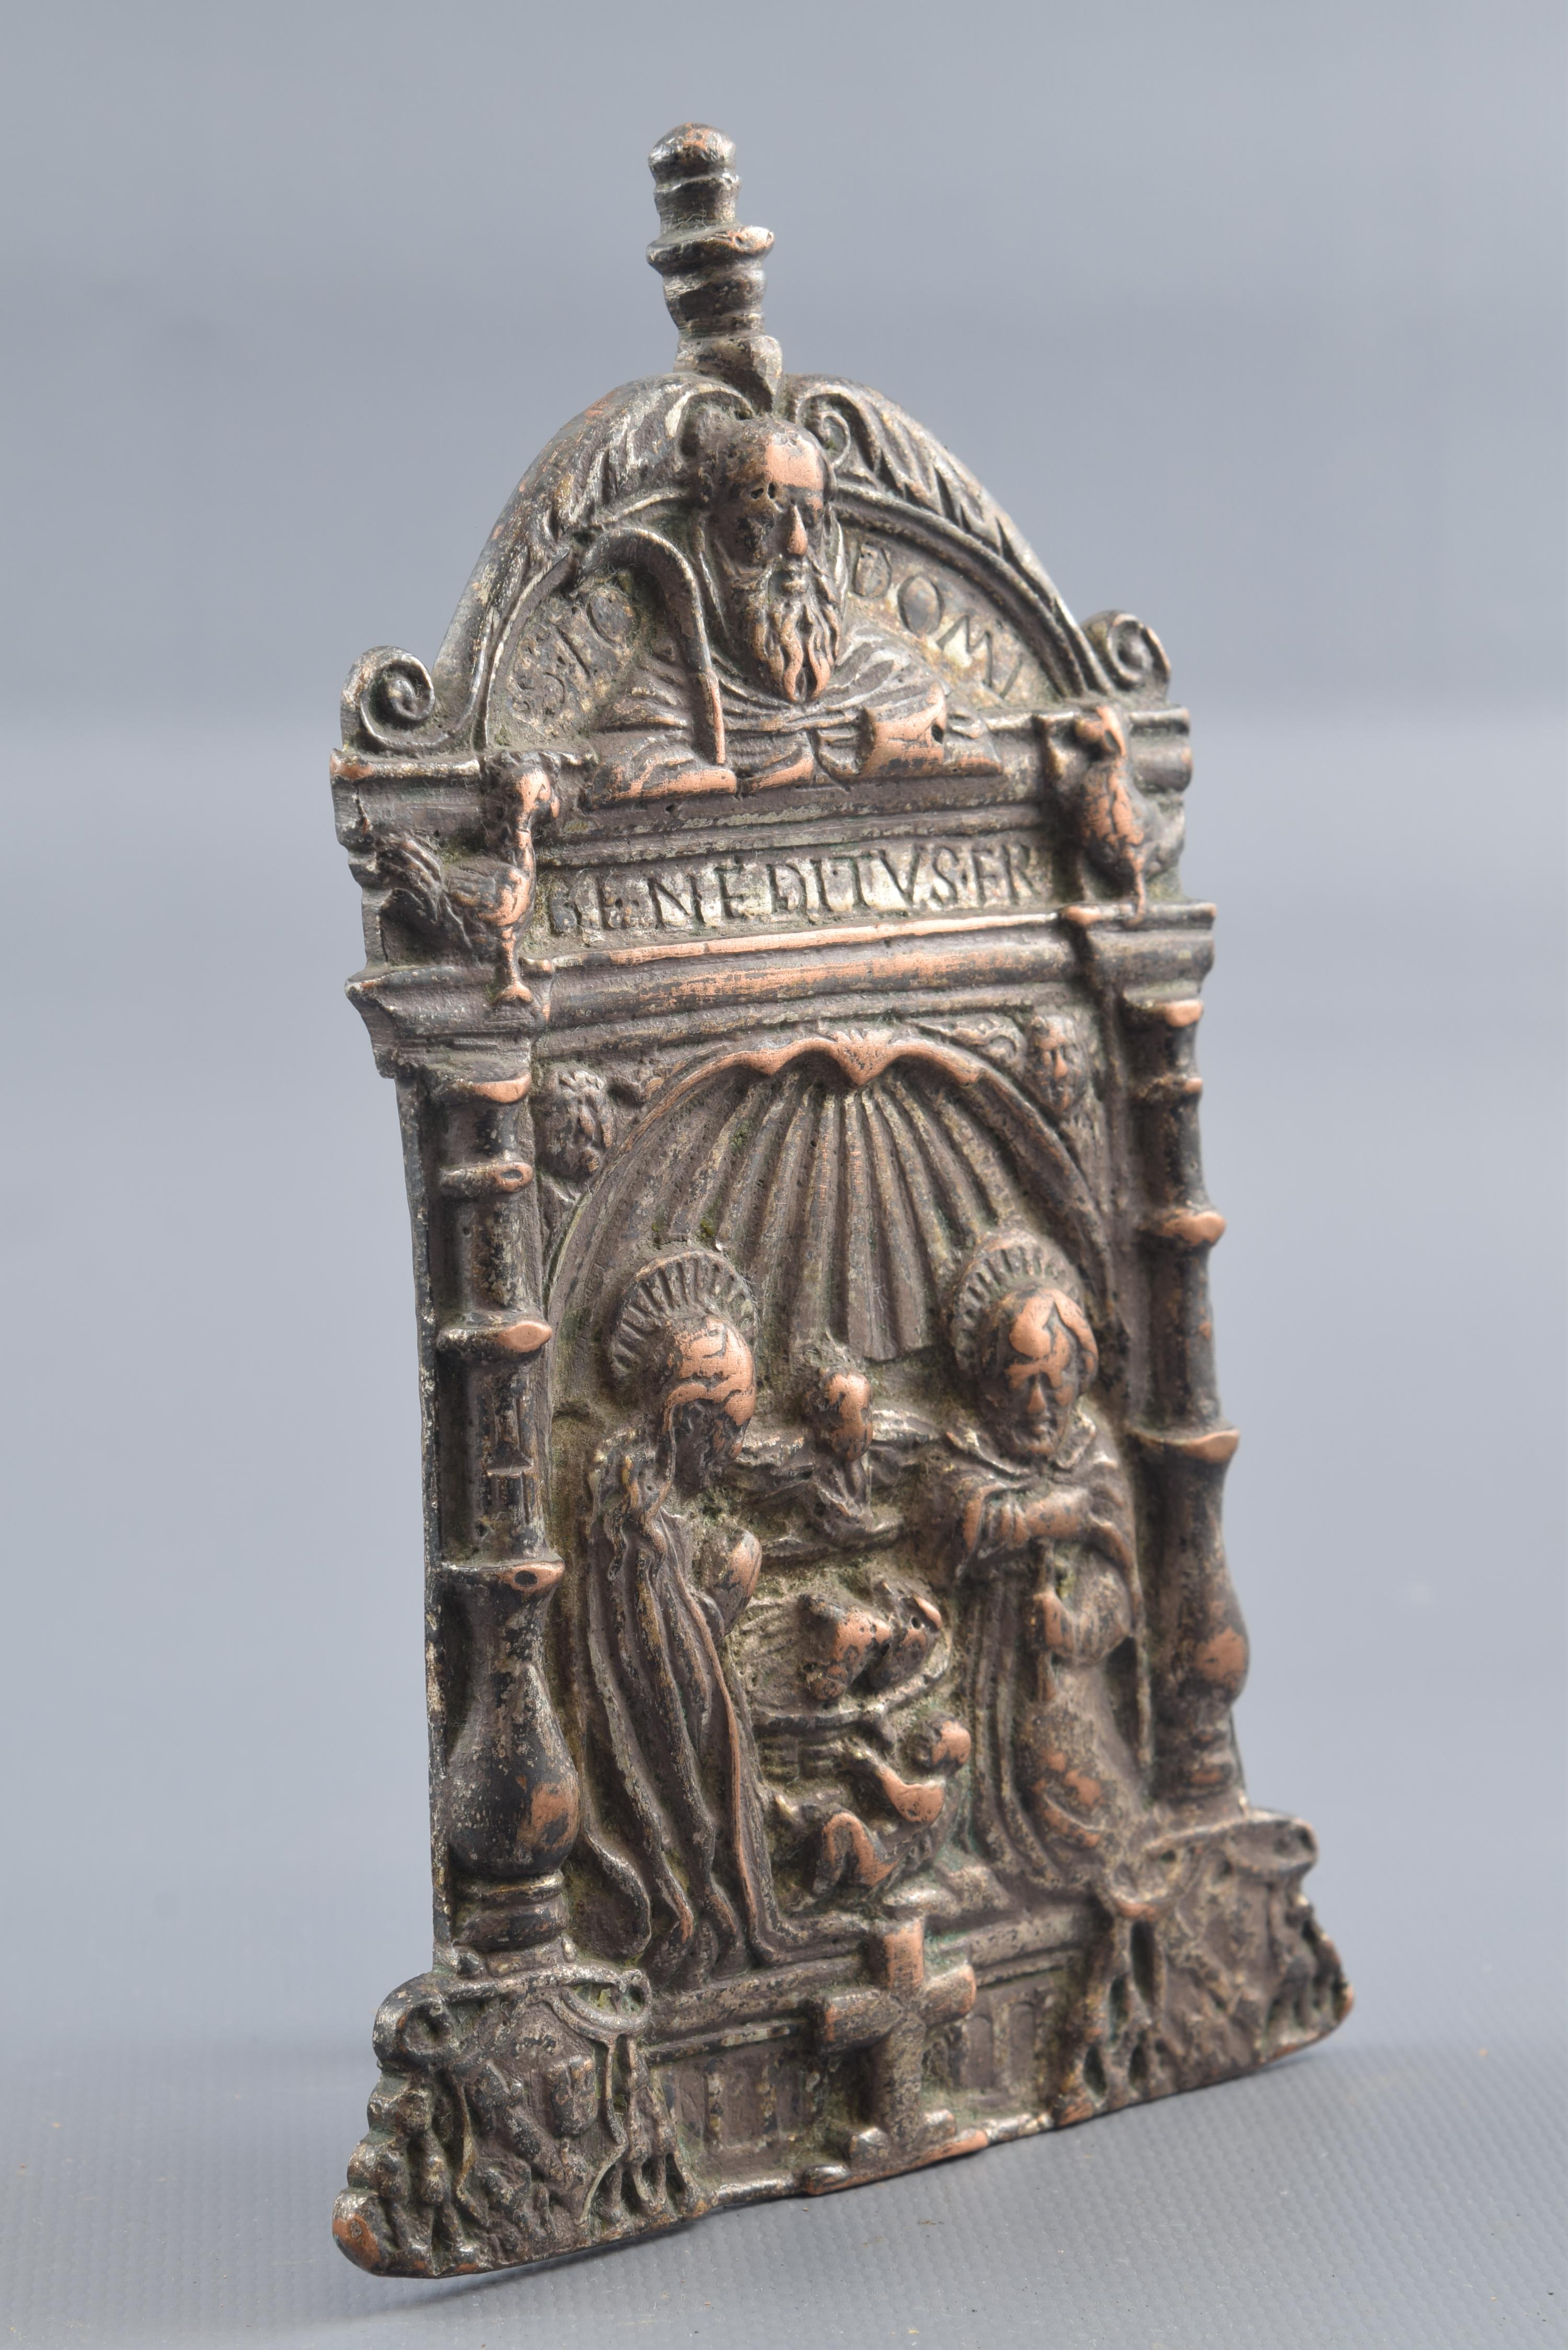 Papierhalter Bronze, 16. Jahrhundert.
Papierhalter aus Bronze mit einem flachen, gebogenen Griff auf der Rückseite, der ein Reliefdekor aufweist, das auf der Vorderseite durch eine architektonische Komposition mit klassischem Einfluss organisiert